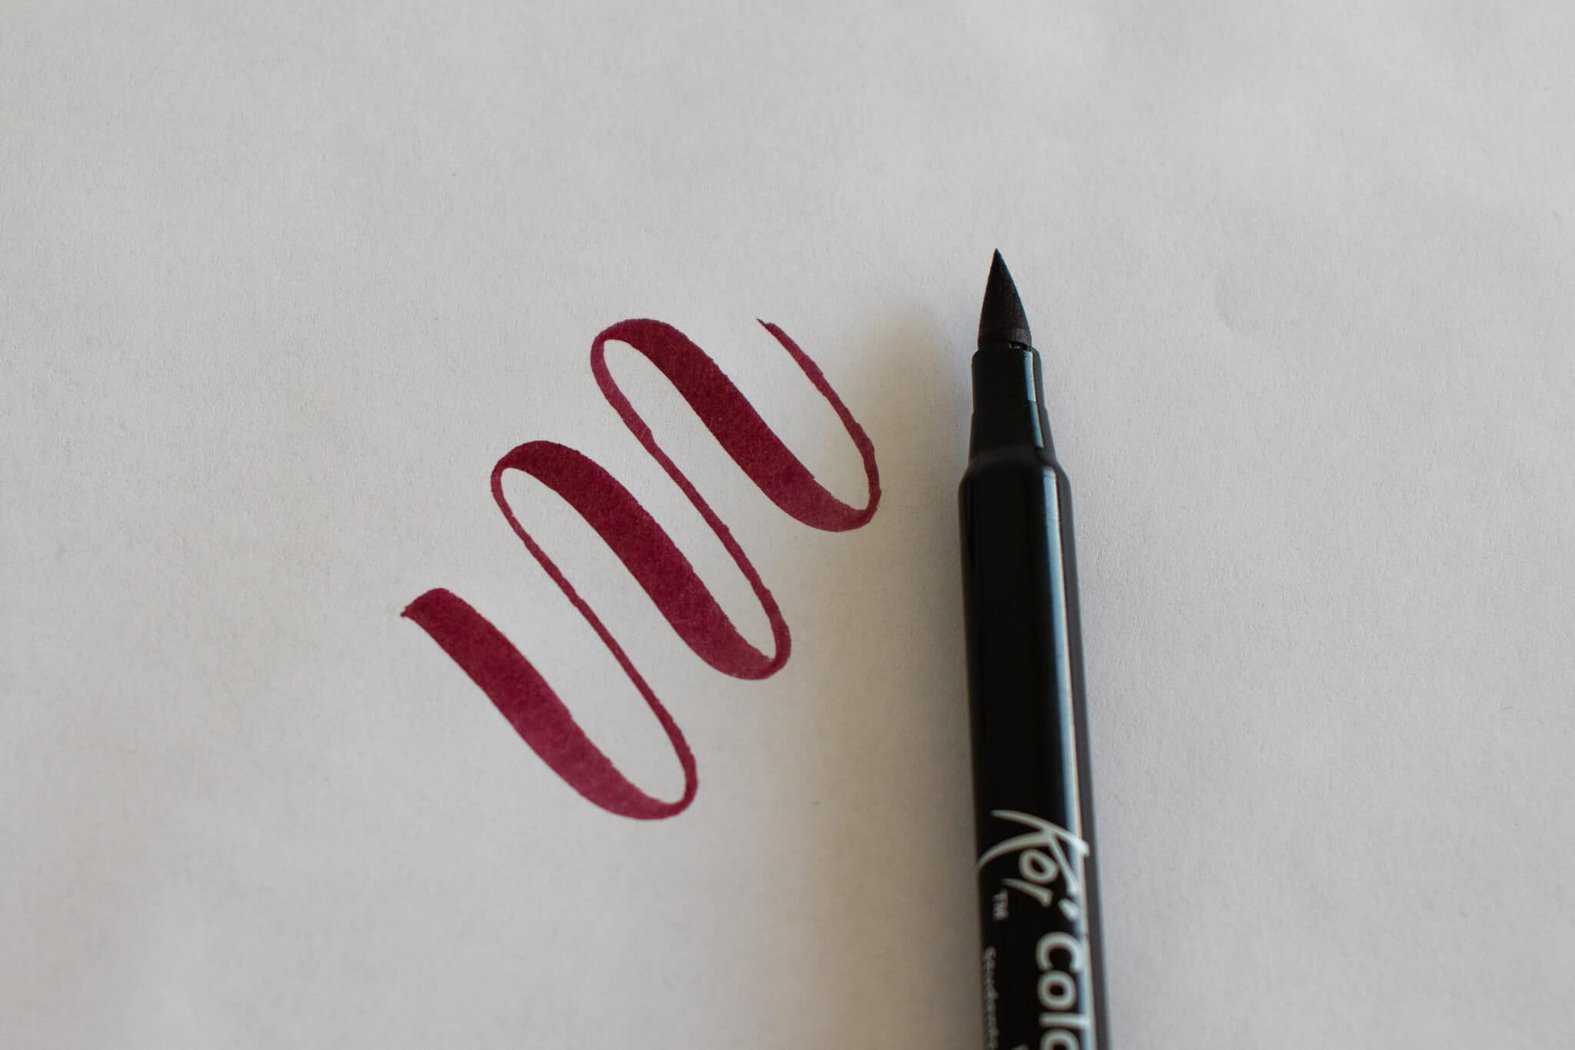 ink flow sample - Sakura Koi brush pen